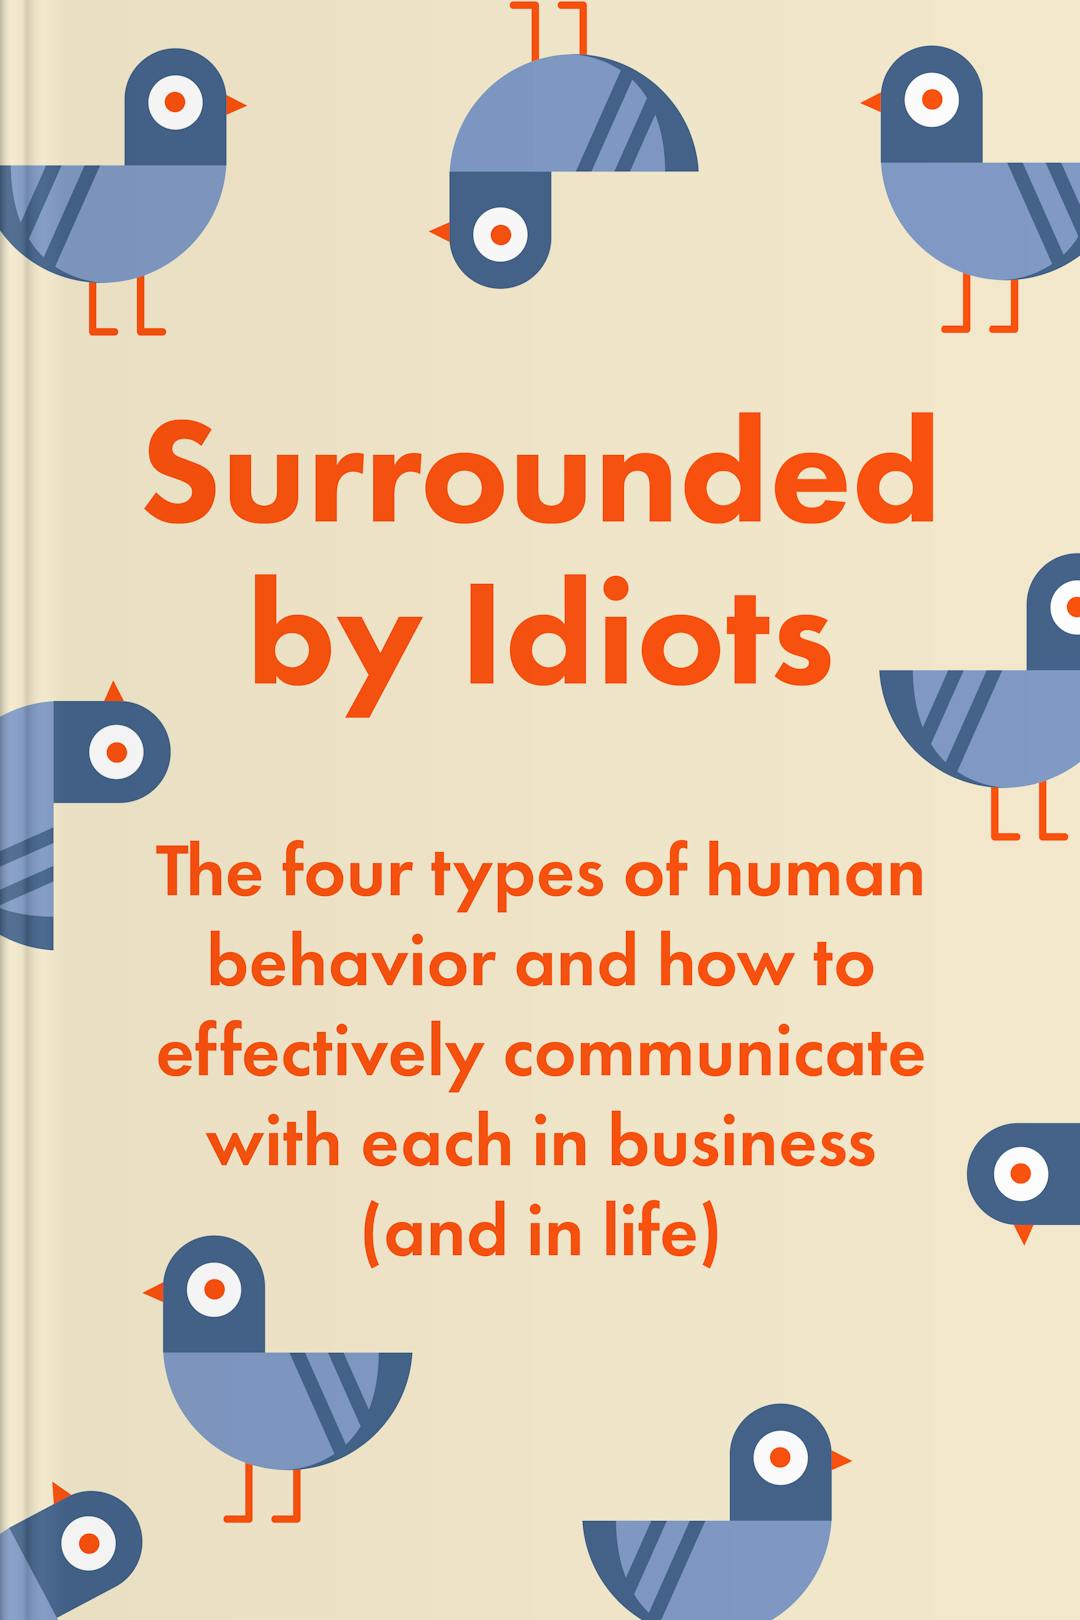 Surrounded by Idiots (The Surrounded by Idiots Series): Thomas Erikson:  : Books